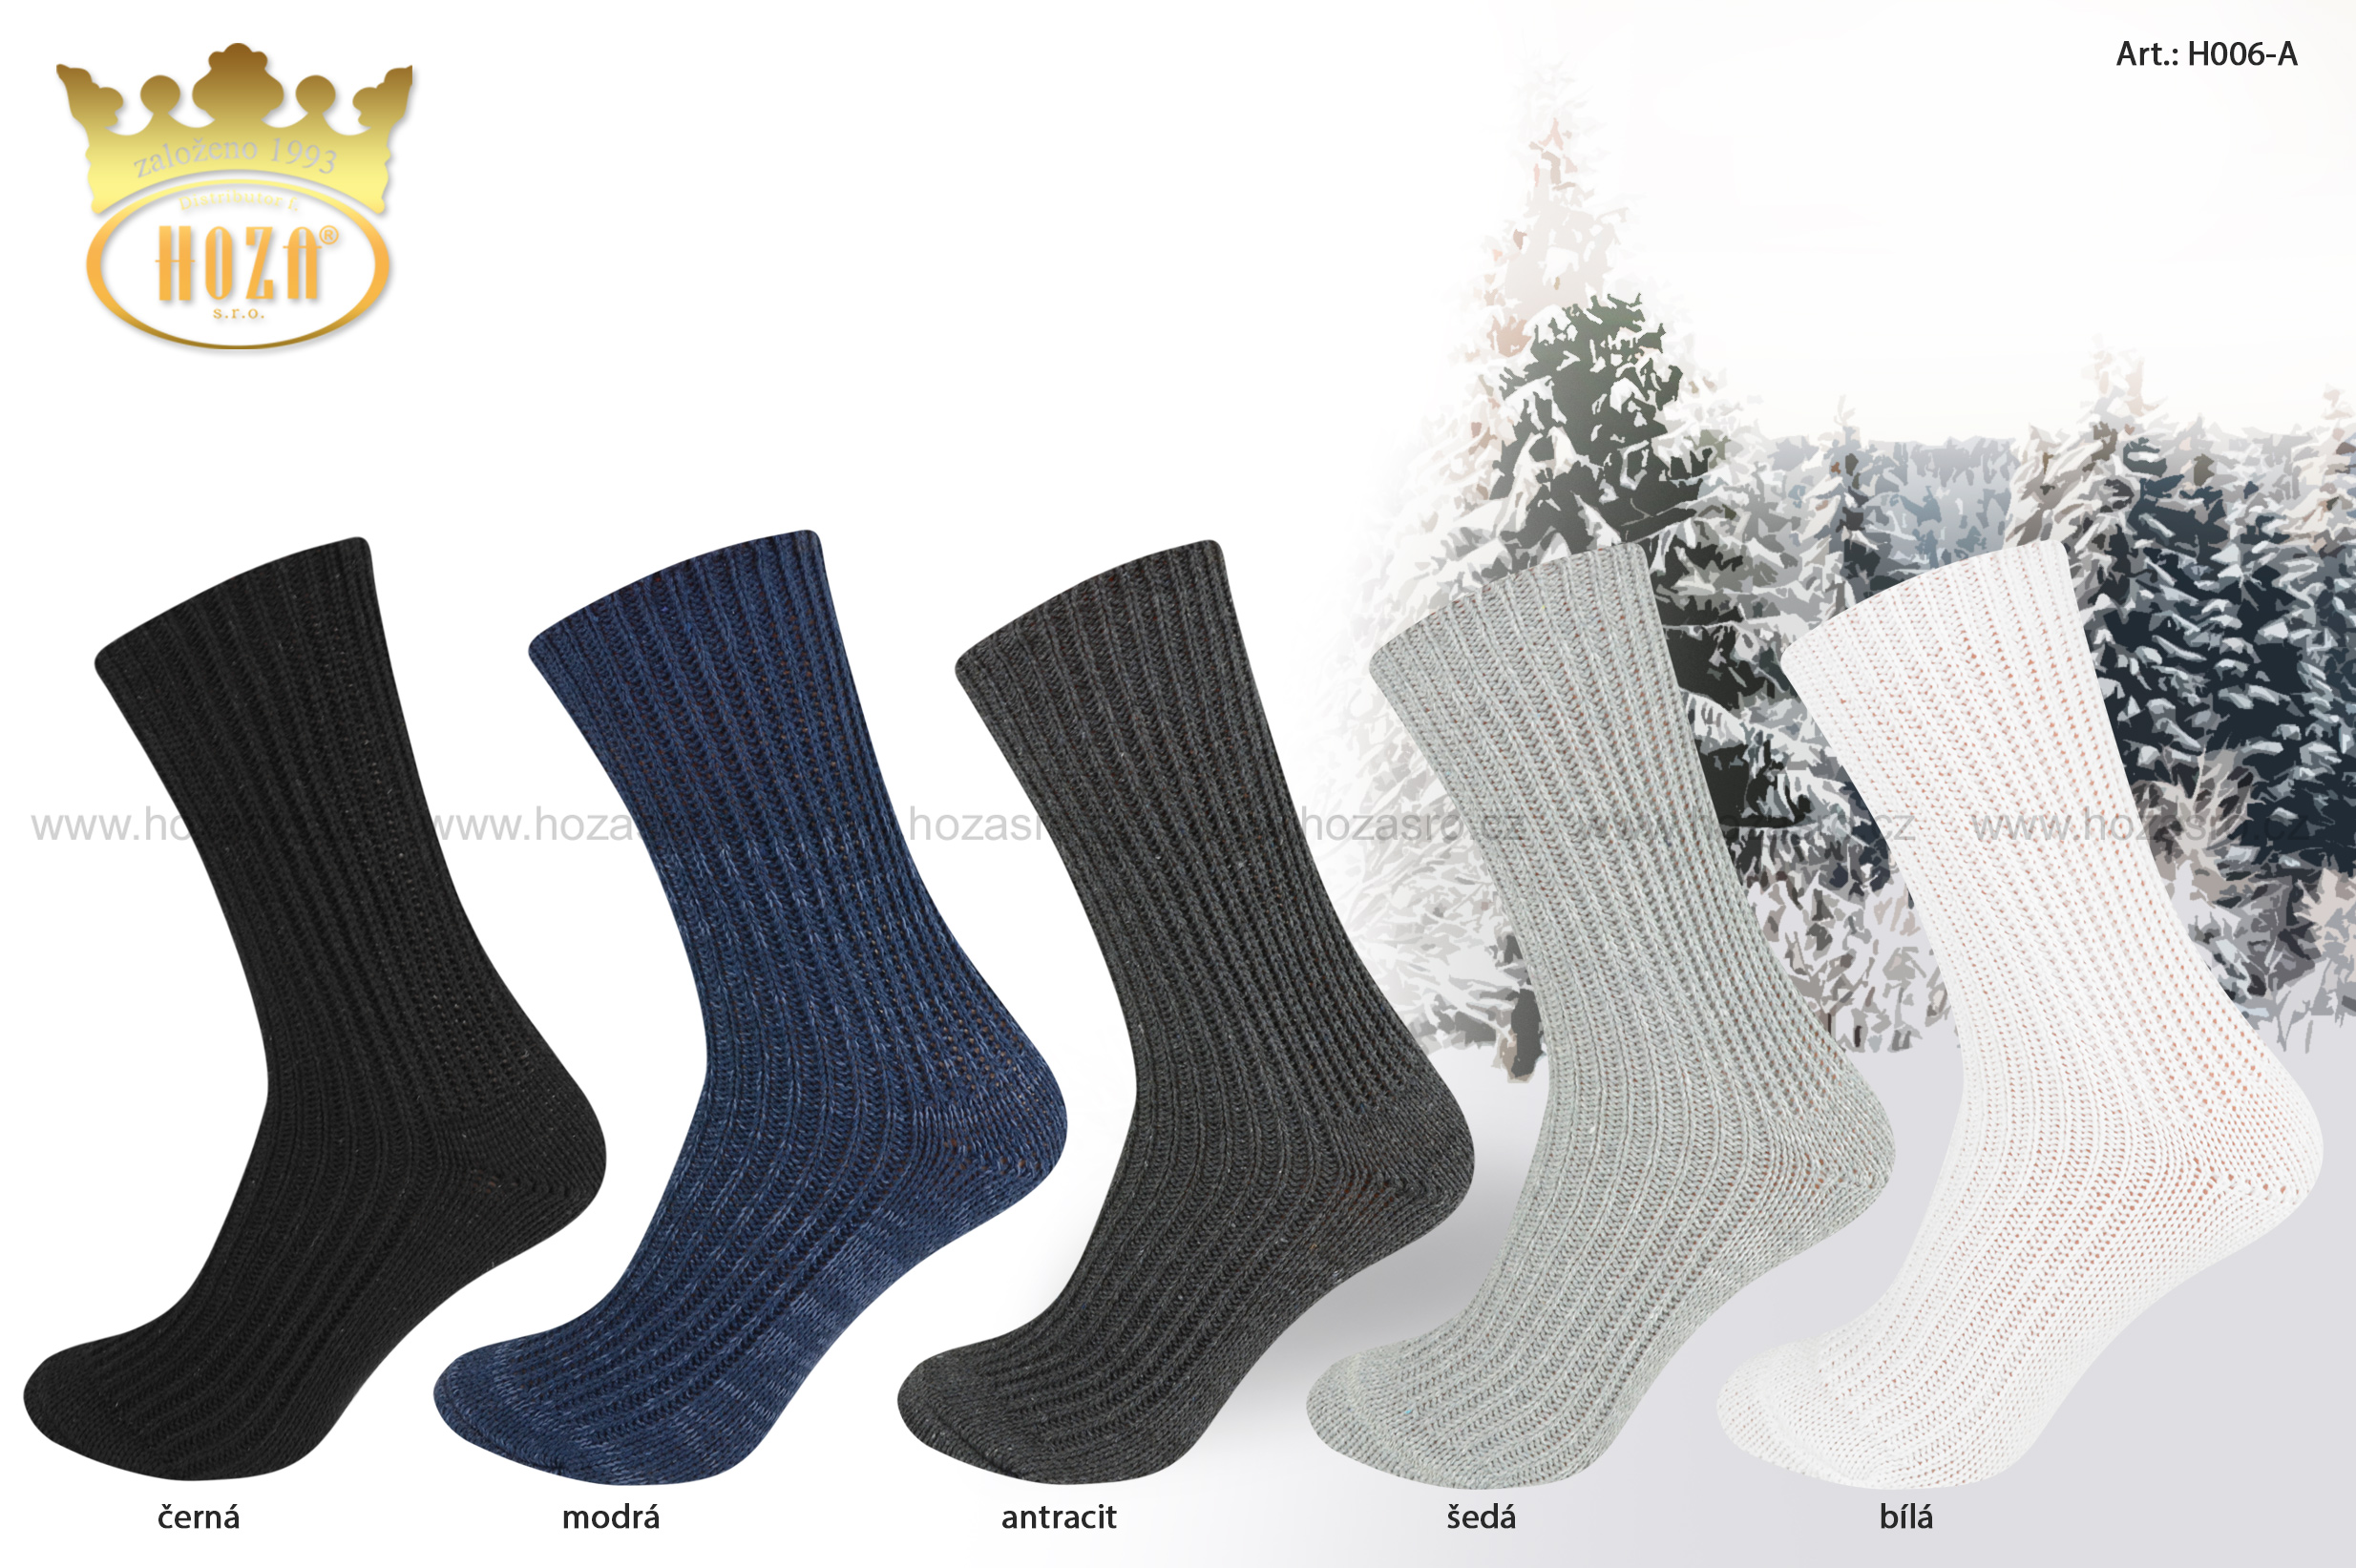 Zimní ponožky HOZA Lída - zdravotní od 89kč - H006-A